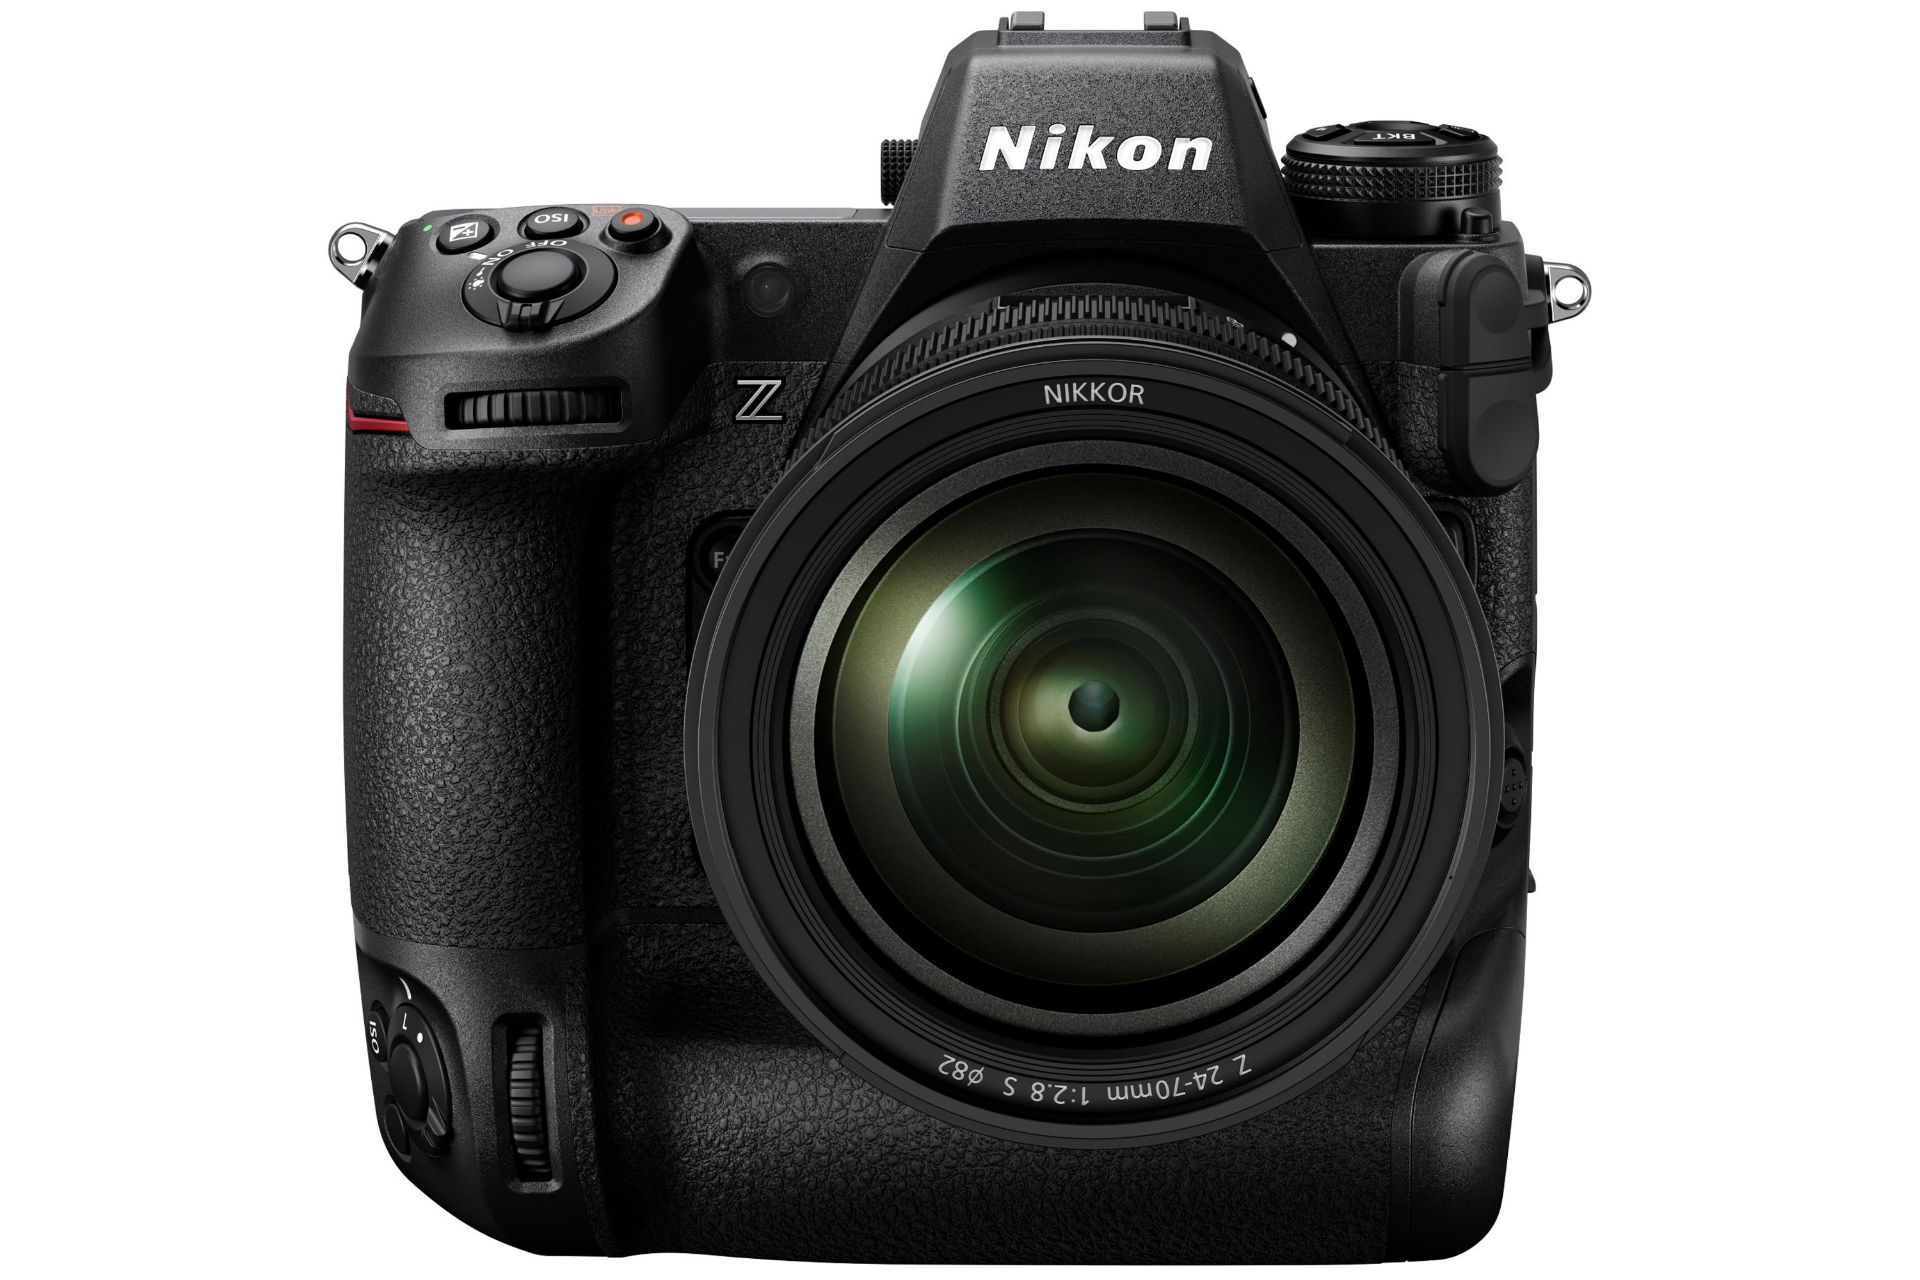 مرجع متخصصين ايران نماي جلو نيكون زد 9 / Nikon Z9 در اولين تصوير رسمي دوربين پرچمدار فول فريم